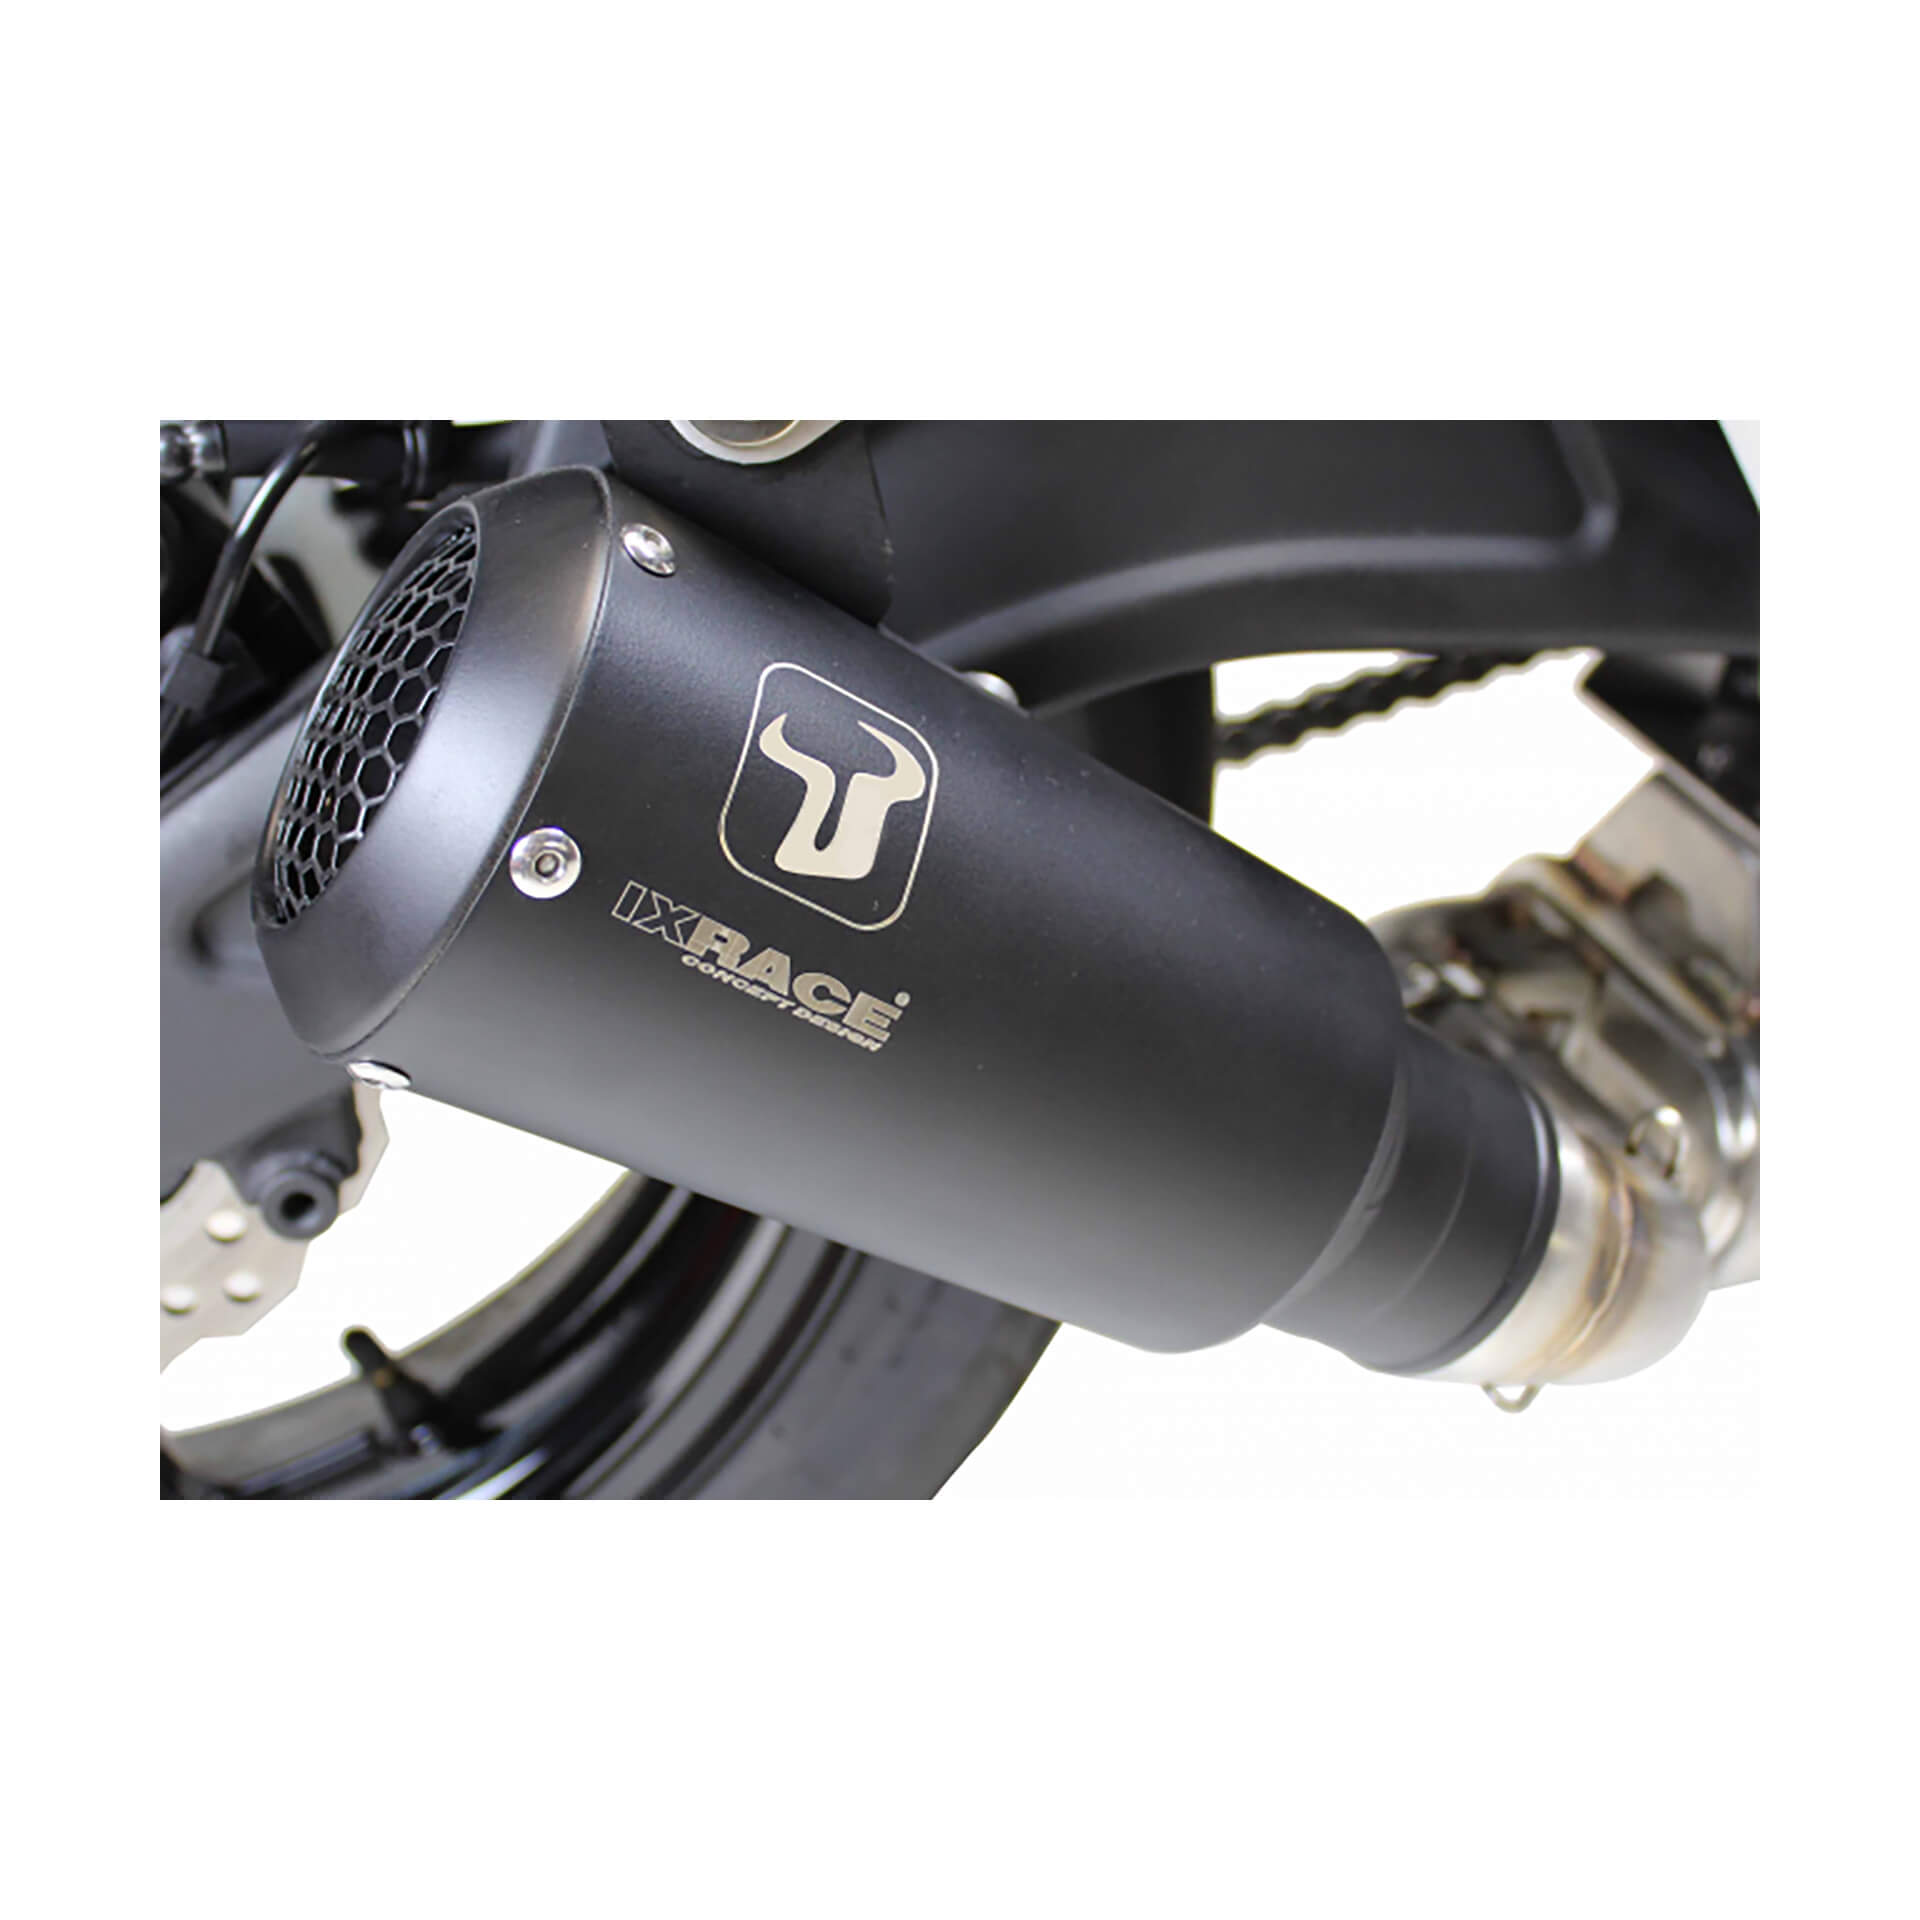 ixrace MK2 stainless steel rear silencer for Honda CB 500 F/X, CBR 500 R